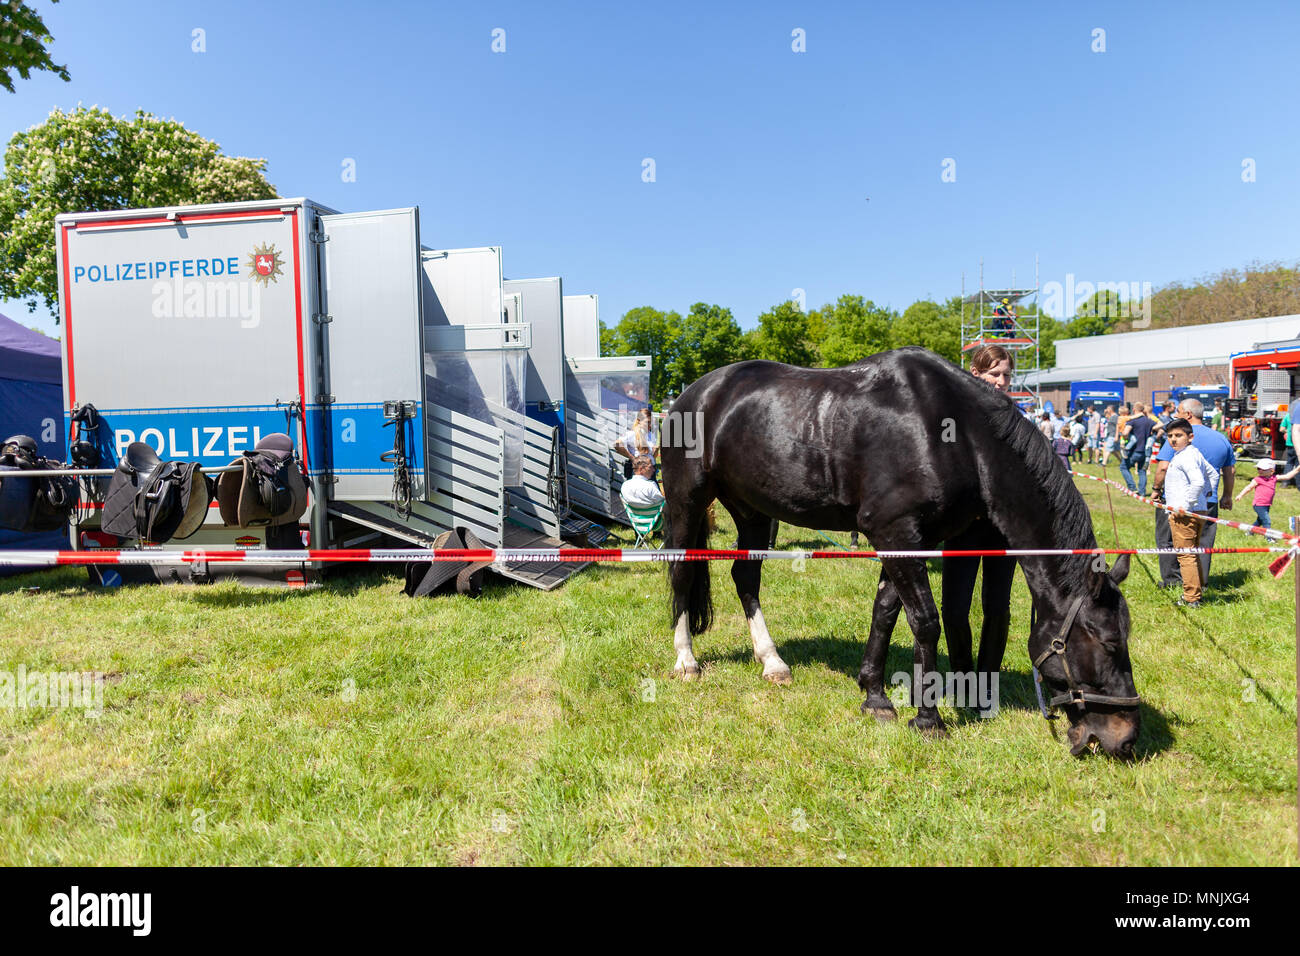 Hambourg / Allemagne - Mai 6, 2018 : la police allemande calèche sur un enclos. Polizeipferde police signifie des chevaux. Banque D'Images